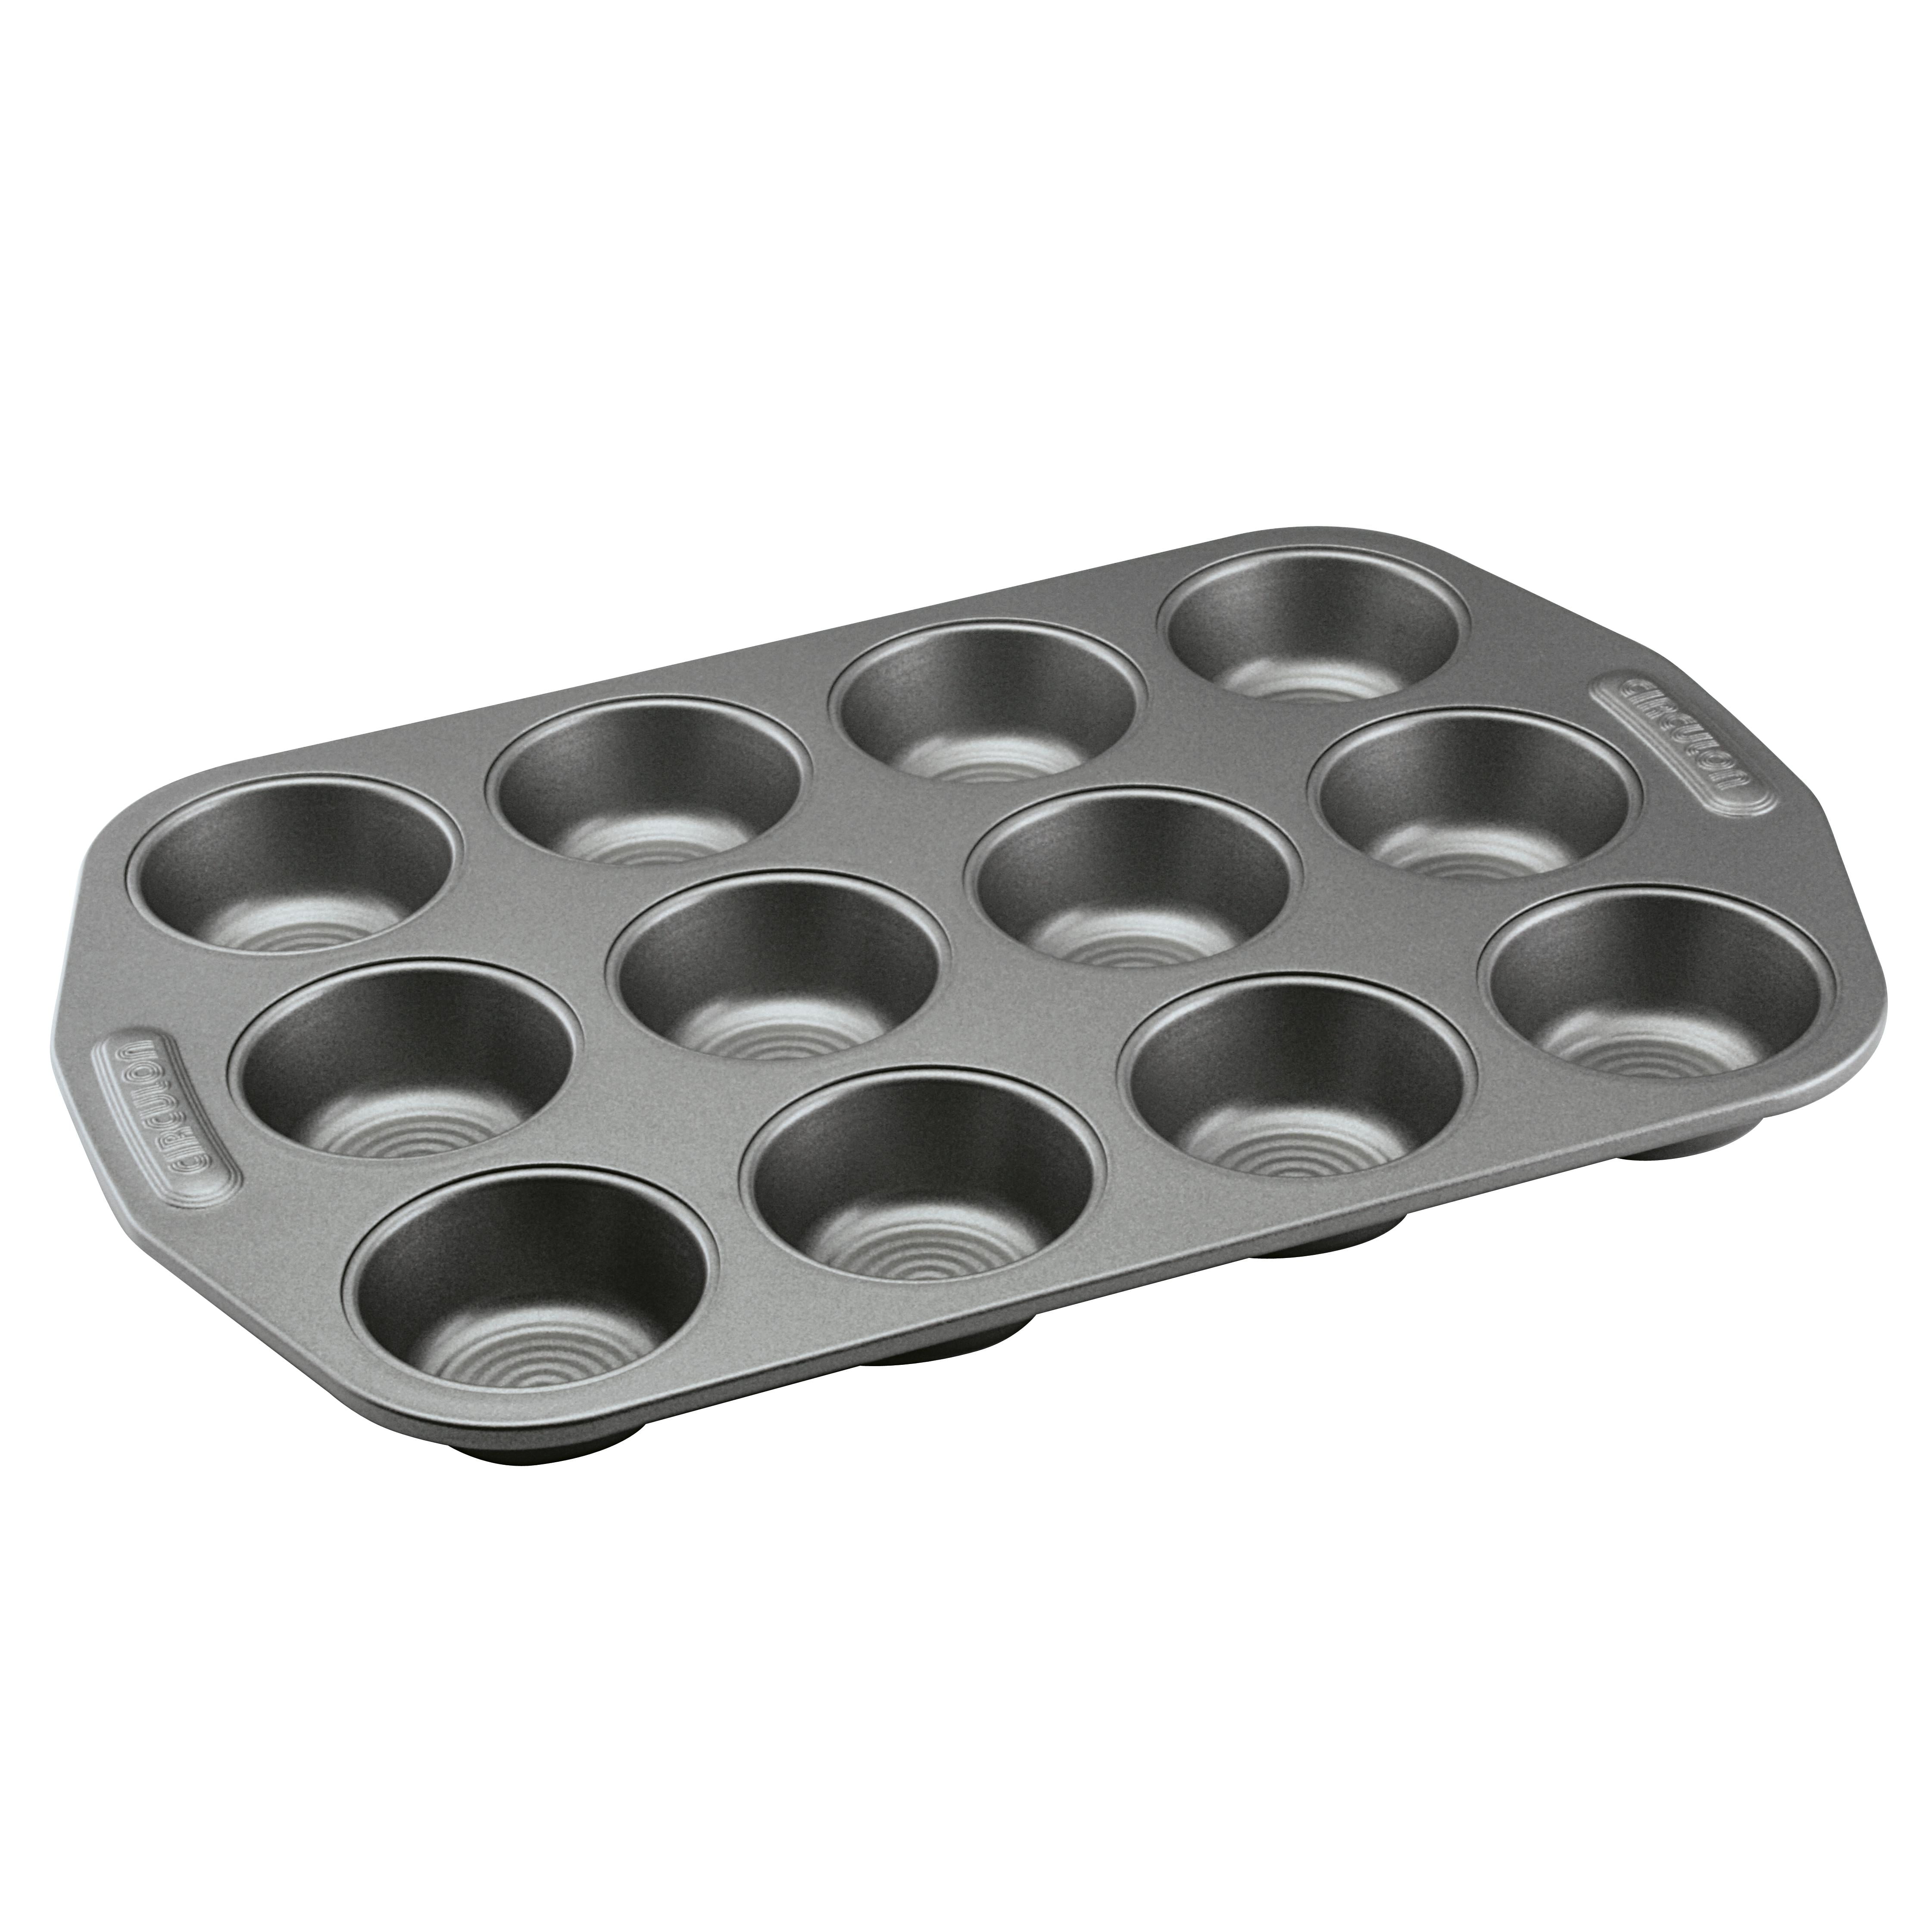 Circulon 5-Piece Nonstick Bakeware Set Gray